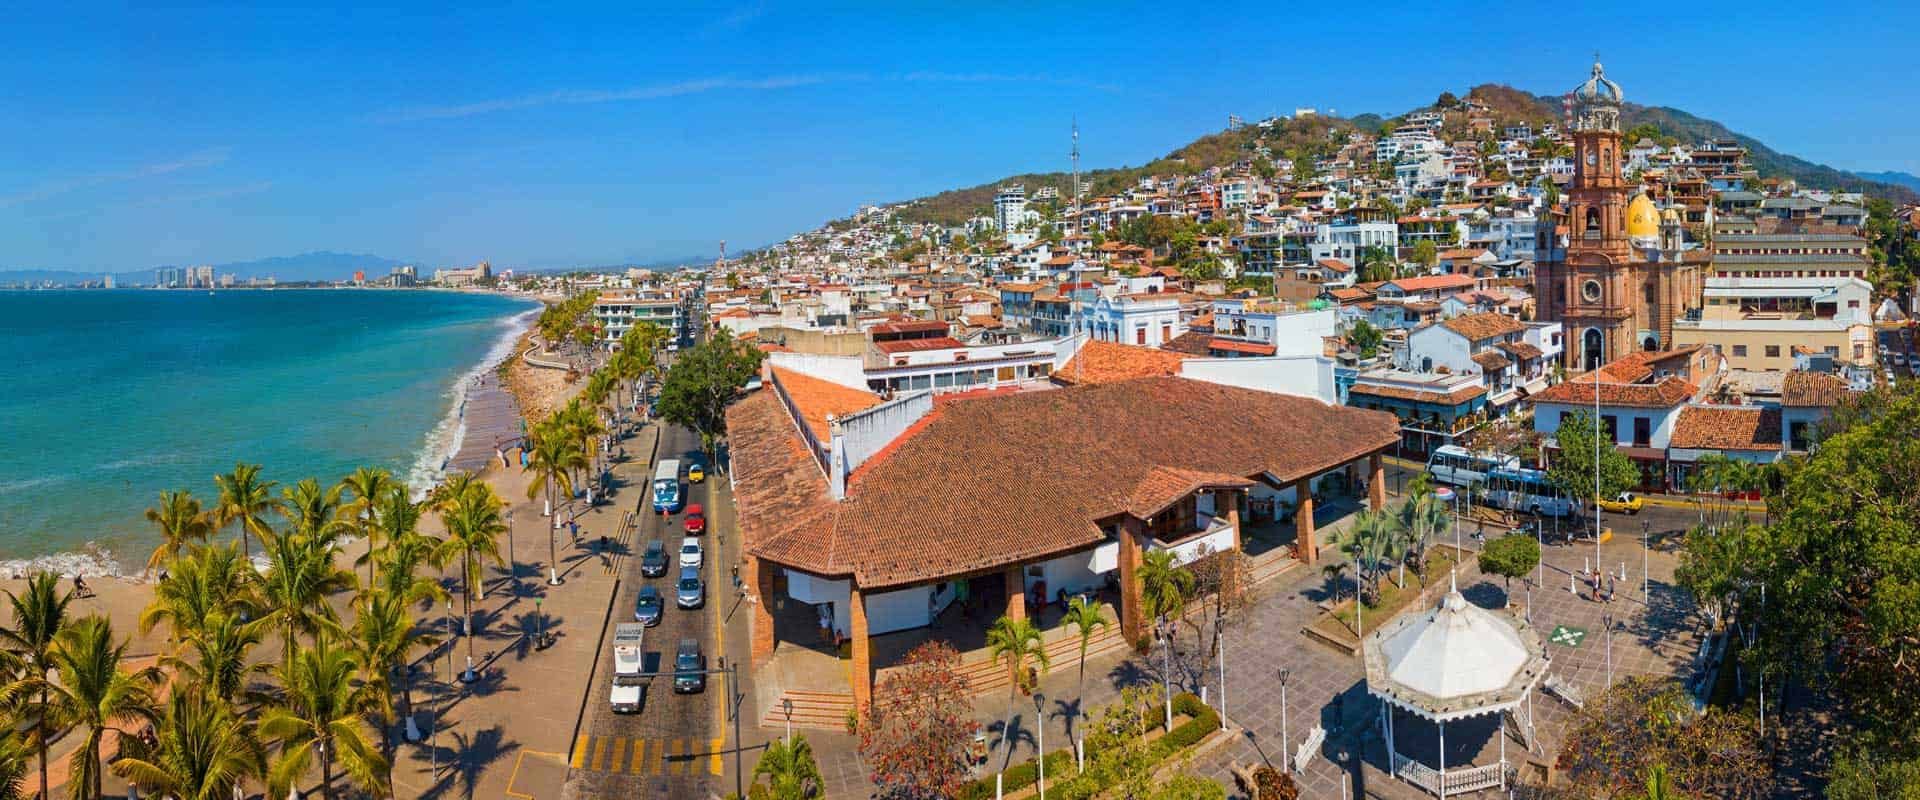 AMPI – Mexico Real Estate Association